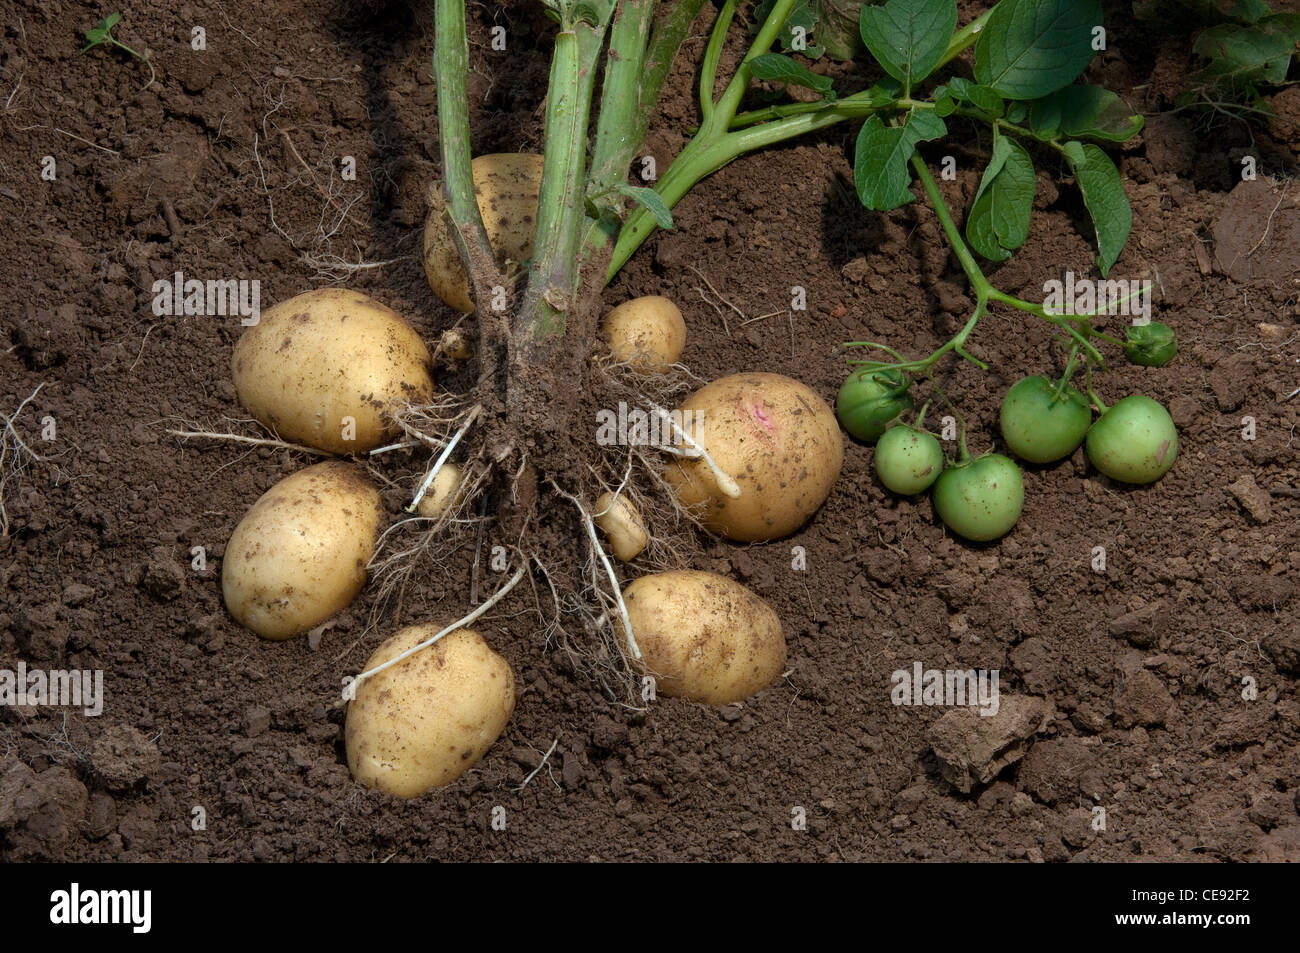 La pomme de terre (Solanum tuberosum) Dimanche. Plante avec les tubercules et les fruits verts. Banque D'Images